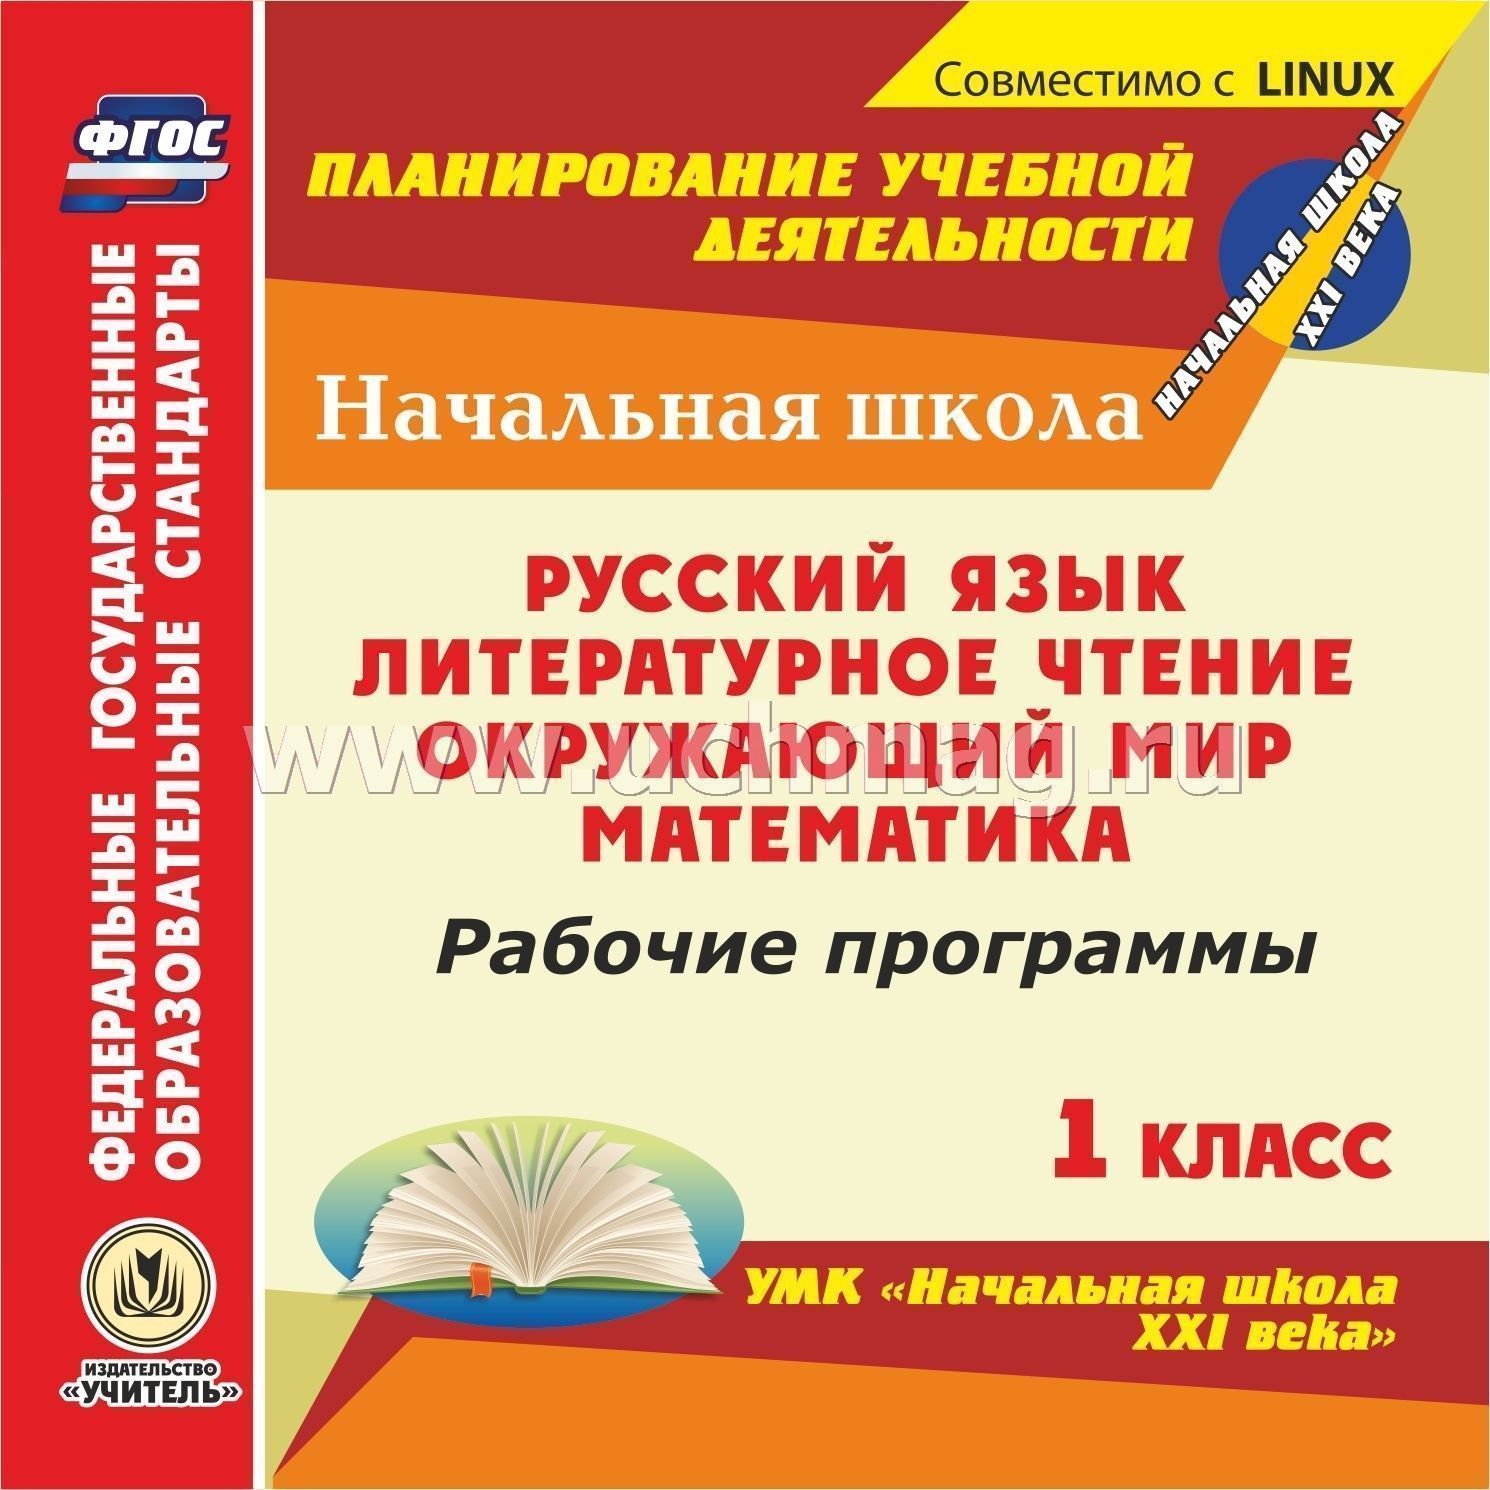 Как скачать бесплатно дополнительный материал к математике русскому языку началка школа россии